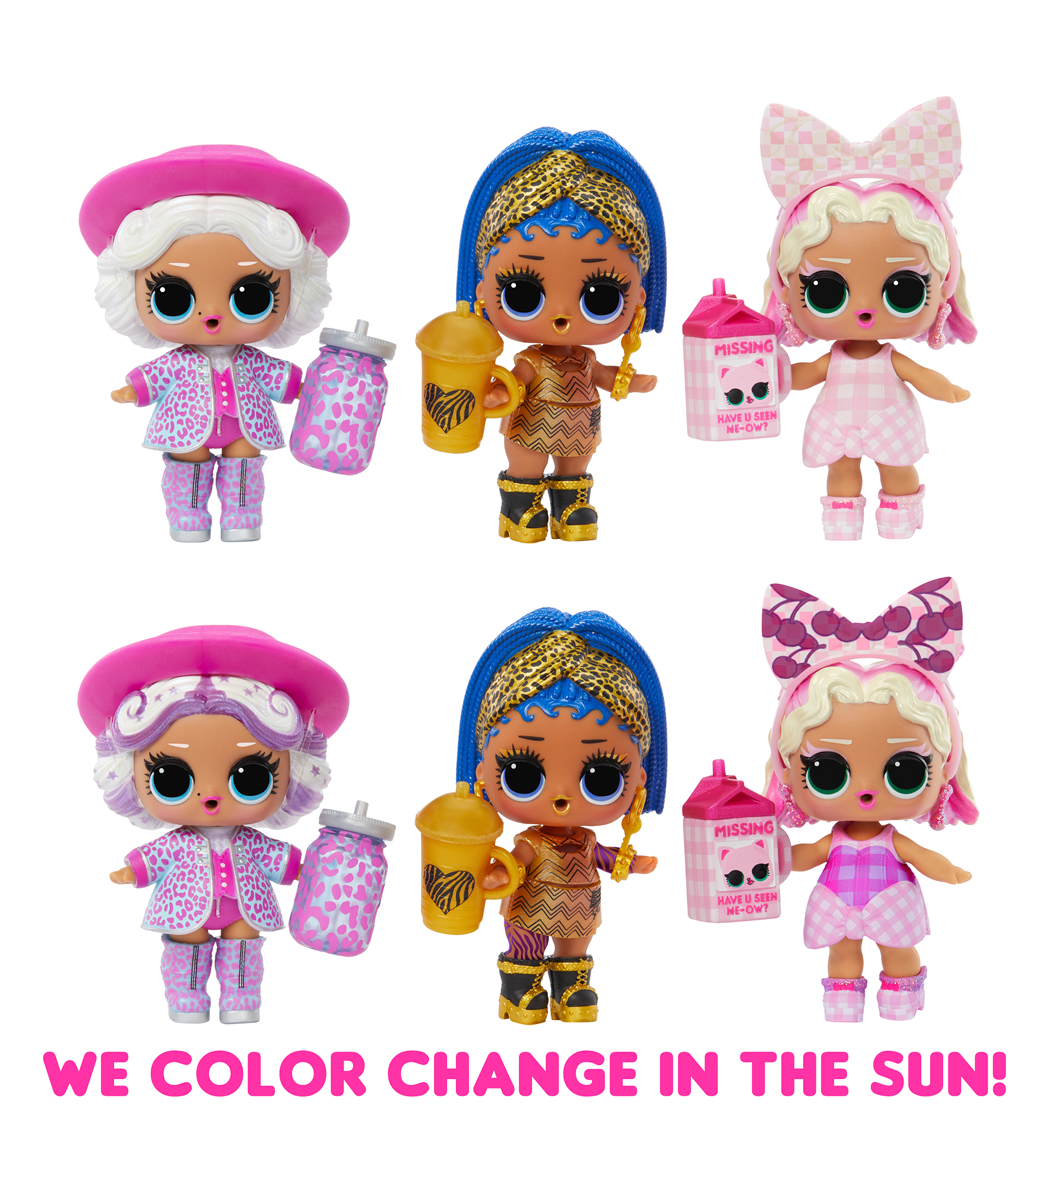 Lol surprise sunshine makeover mini bambole assortite - LOL